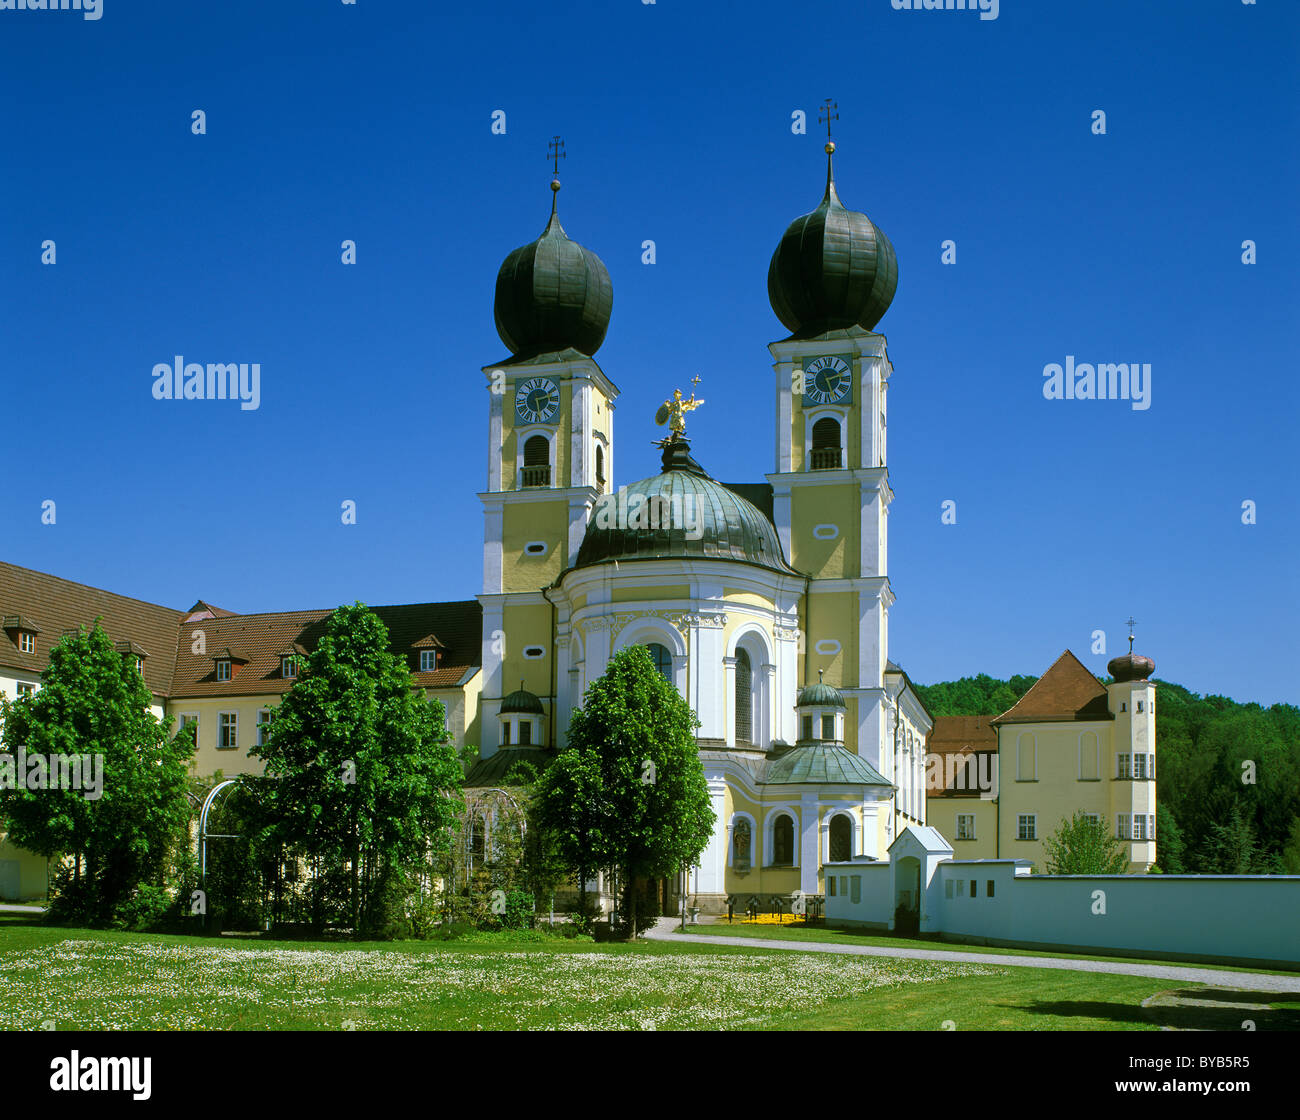 Monastery church S.t Michael, Benediktinerabtei Metten Benedictine abbey, Lower Bavaria, Germany, Europe Stock Photo